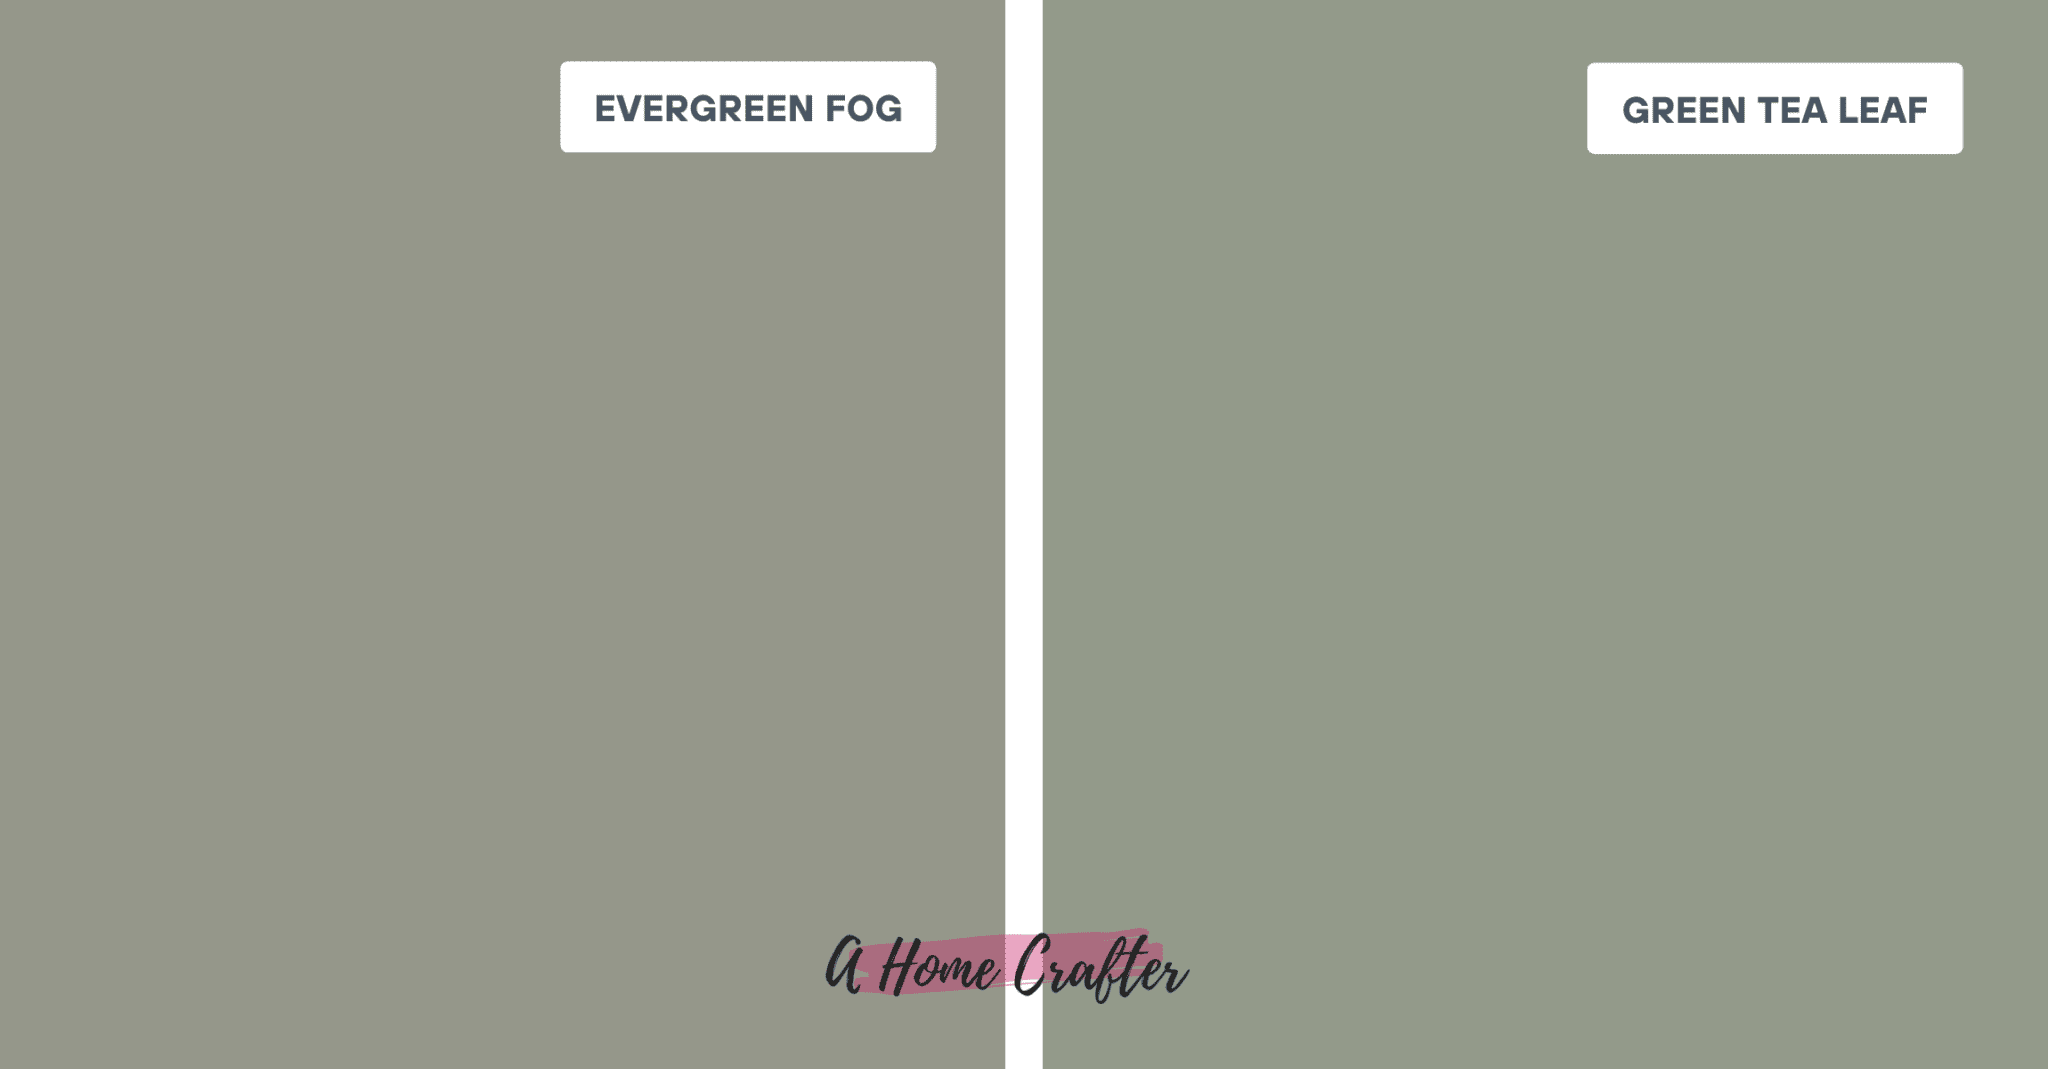 evergreen fog vs. green tea leaf